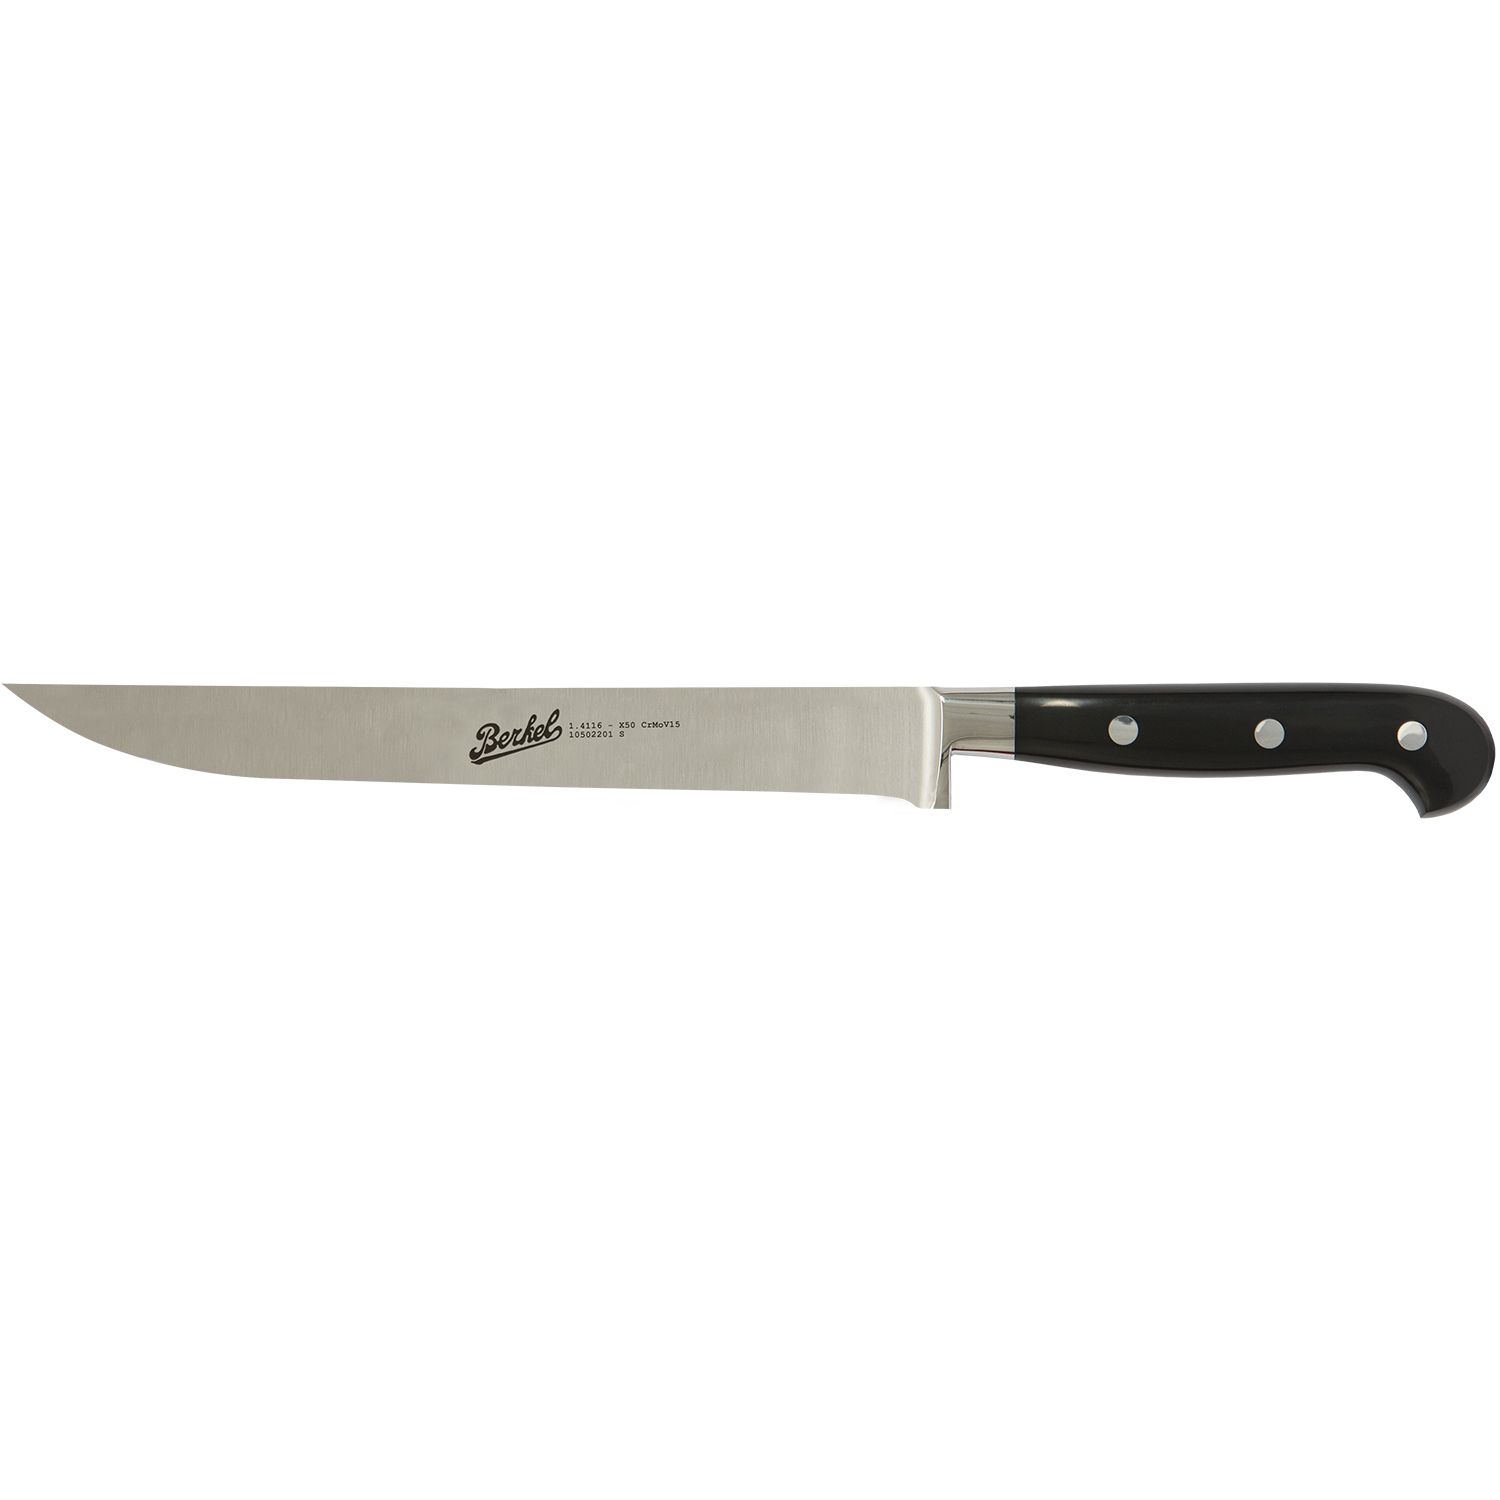 Carving knife cm.22 Stainless Steel Berkel Adhoc Handle Glossy Black Resin